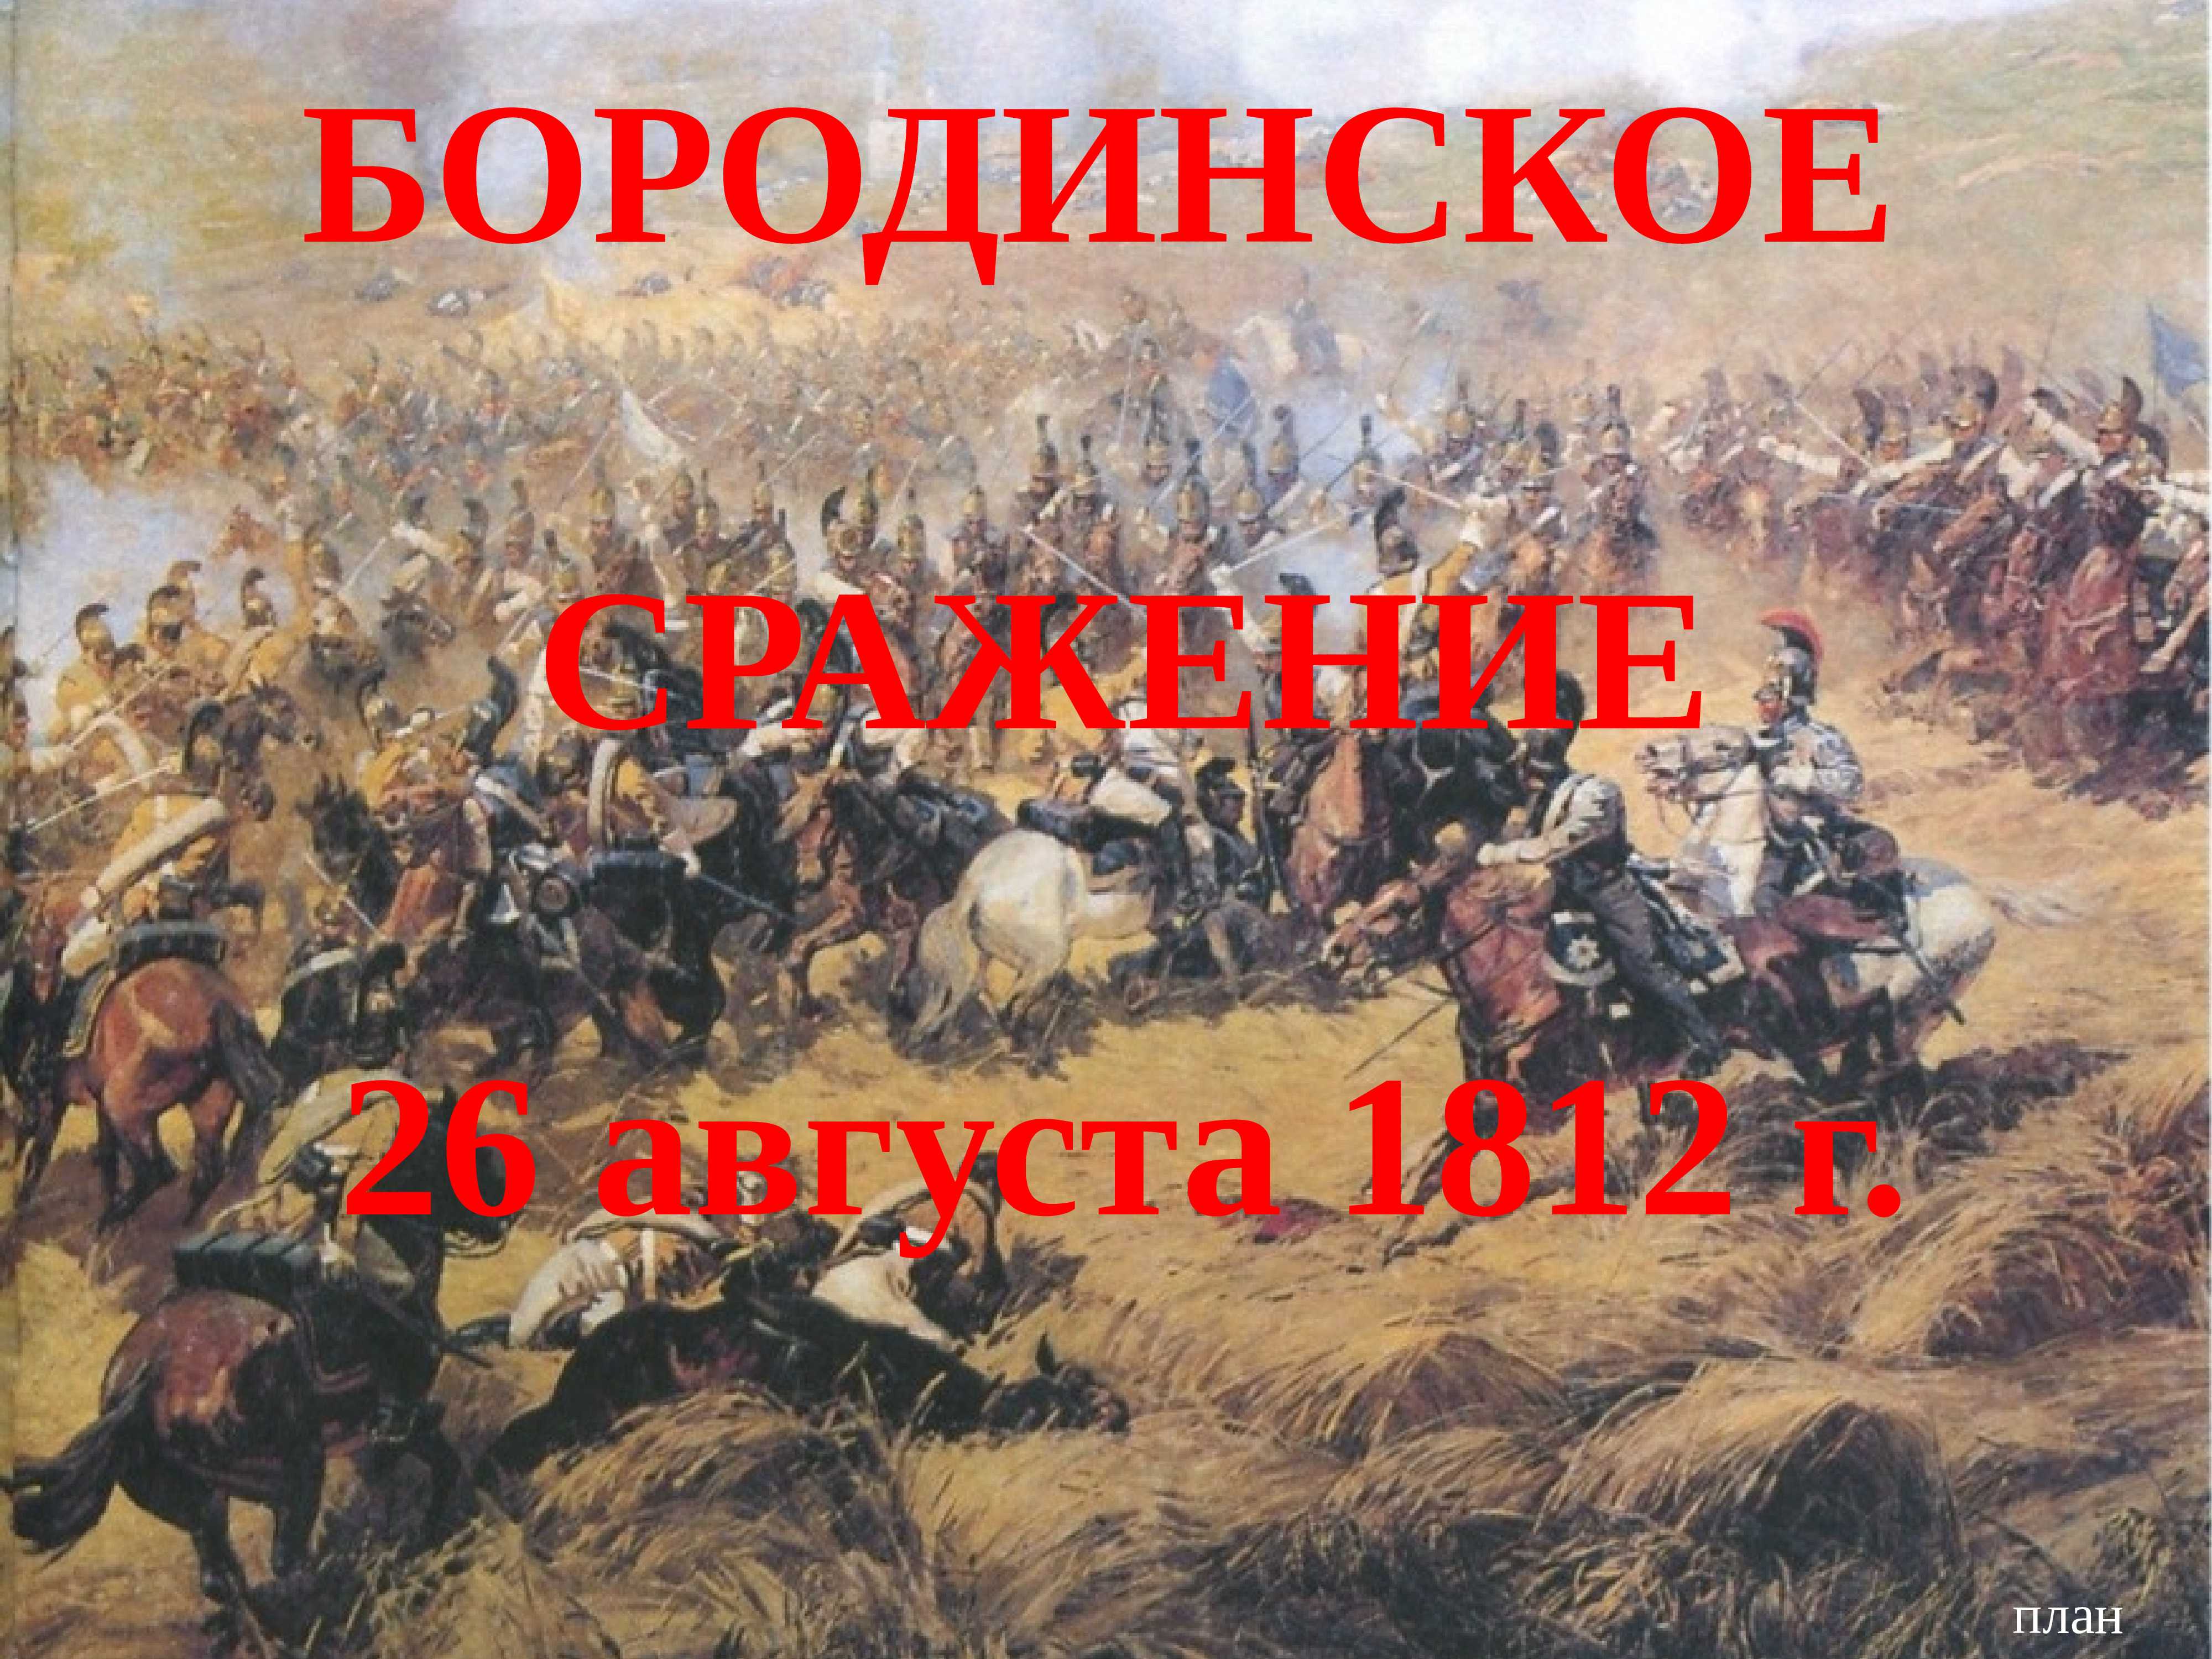 26 августа бородино. 26 Августа 1812 Бородинская битва. Бородинская битва 1812 Заголовок. Бородино сражение 26 августа. Бородино 26 августа 1812.